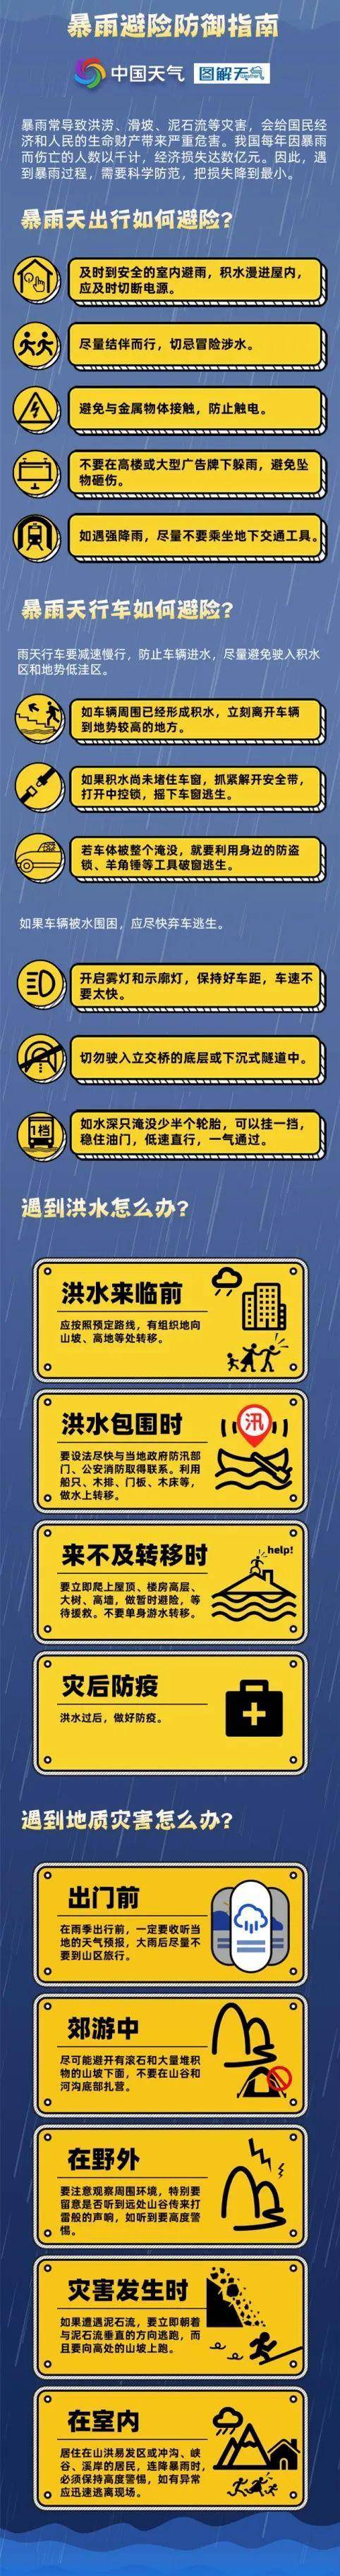 多条预警！暴雨、大暴雨来袭，河南省防指下发重要通知